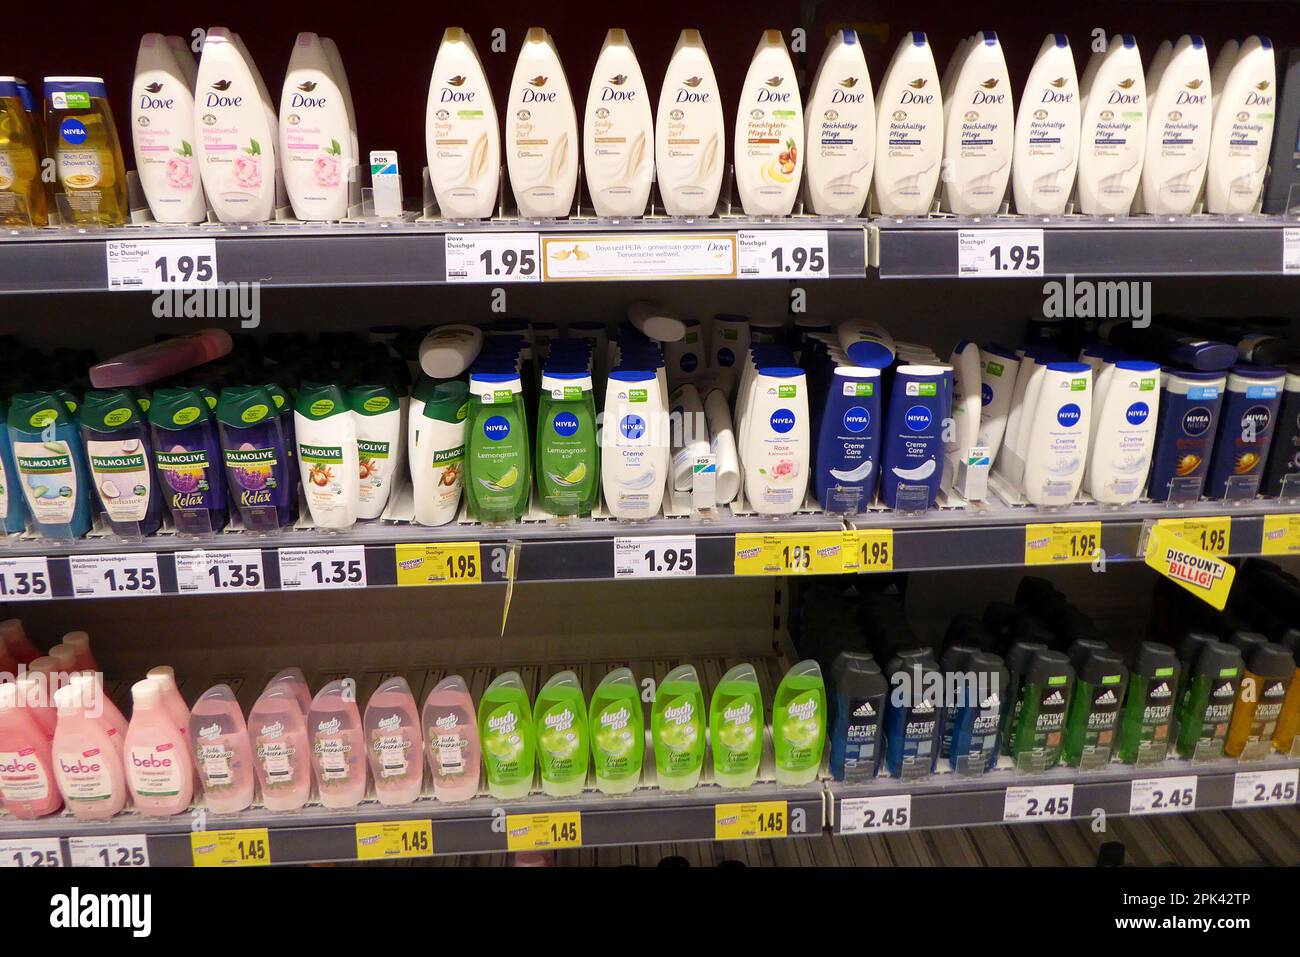 Regale im Supermarkt / Regale im Supermarkt / Haar Shampoo / Duschgel / Hygenie / Artikel Stockfoto